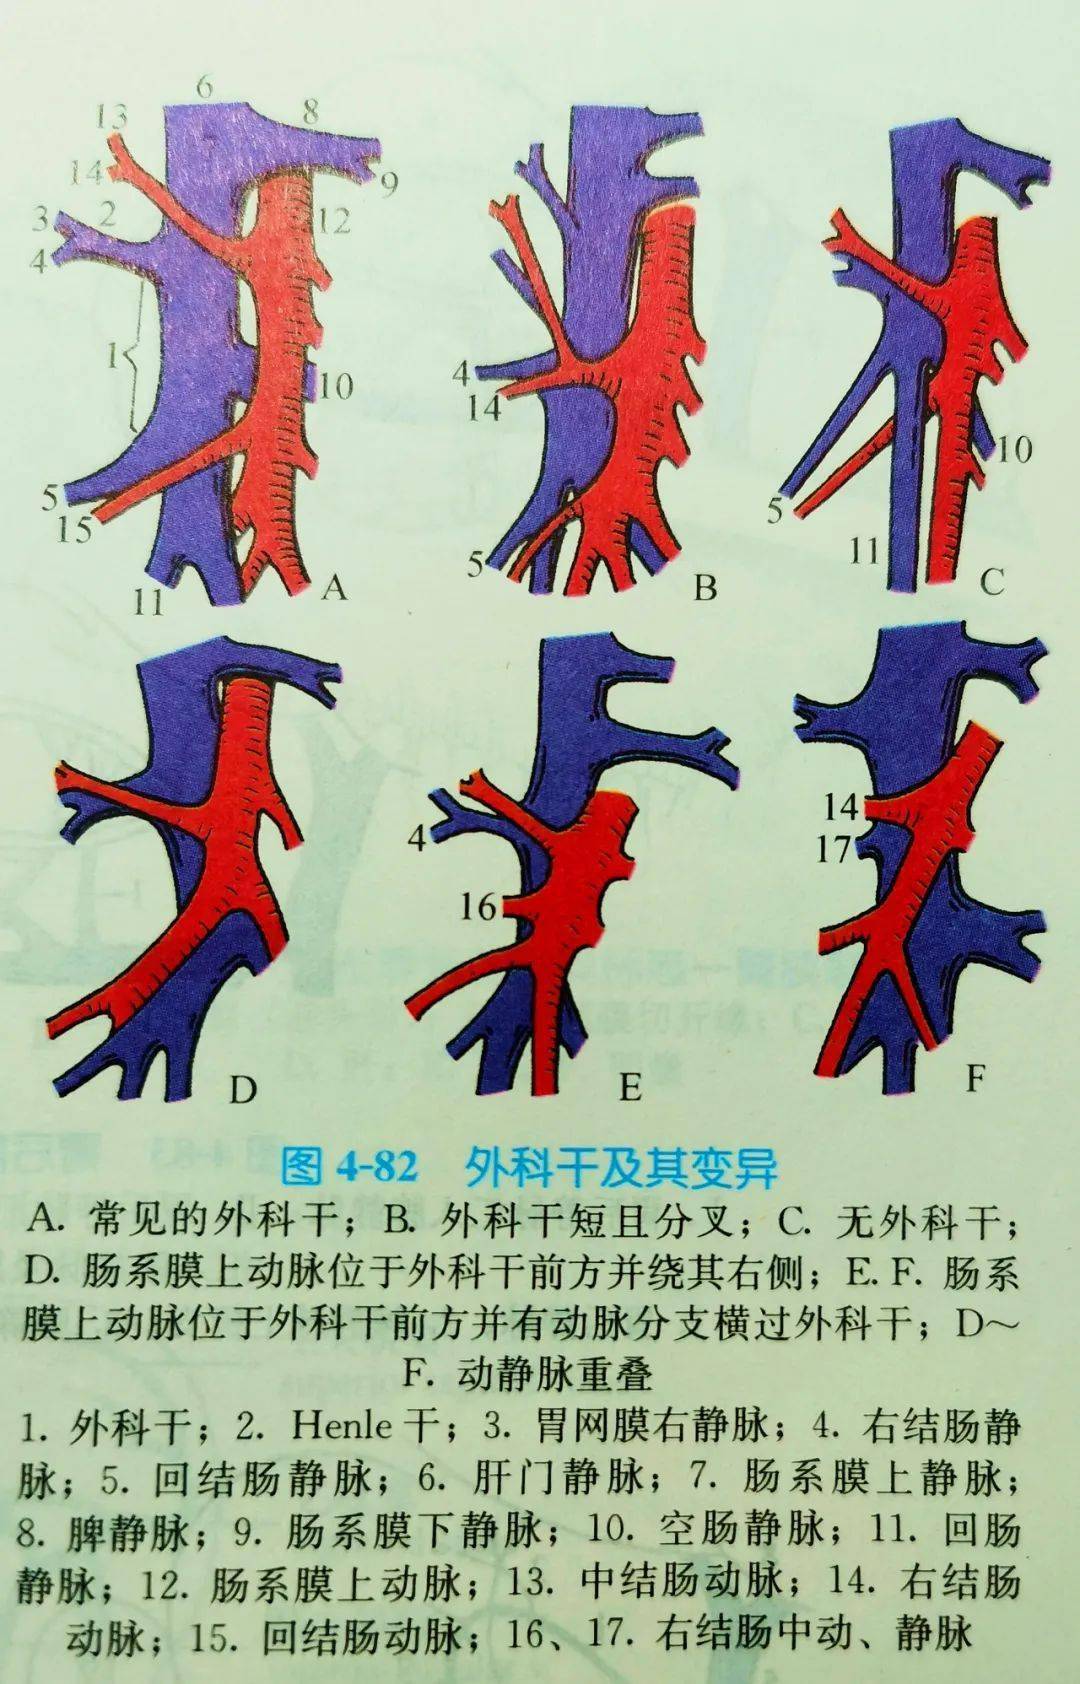 图(10):外科干及其变异(《局部解剖学》)↑↑↑9,胃网膜右动脉(right